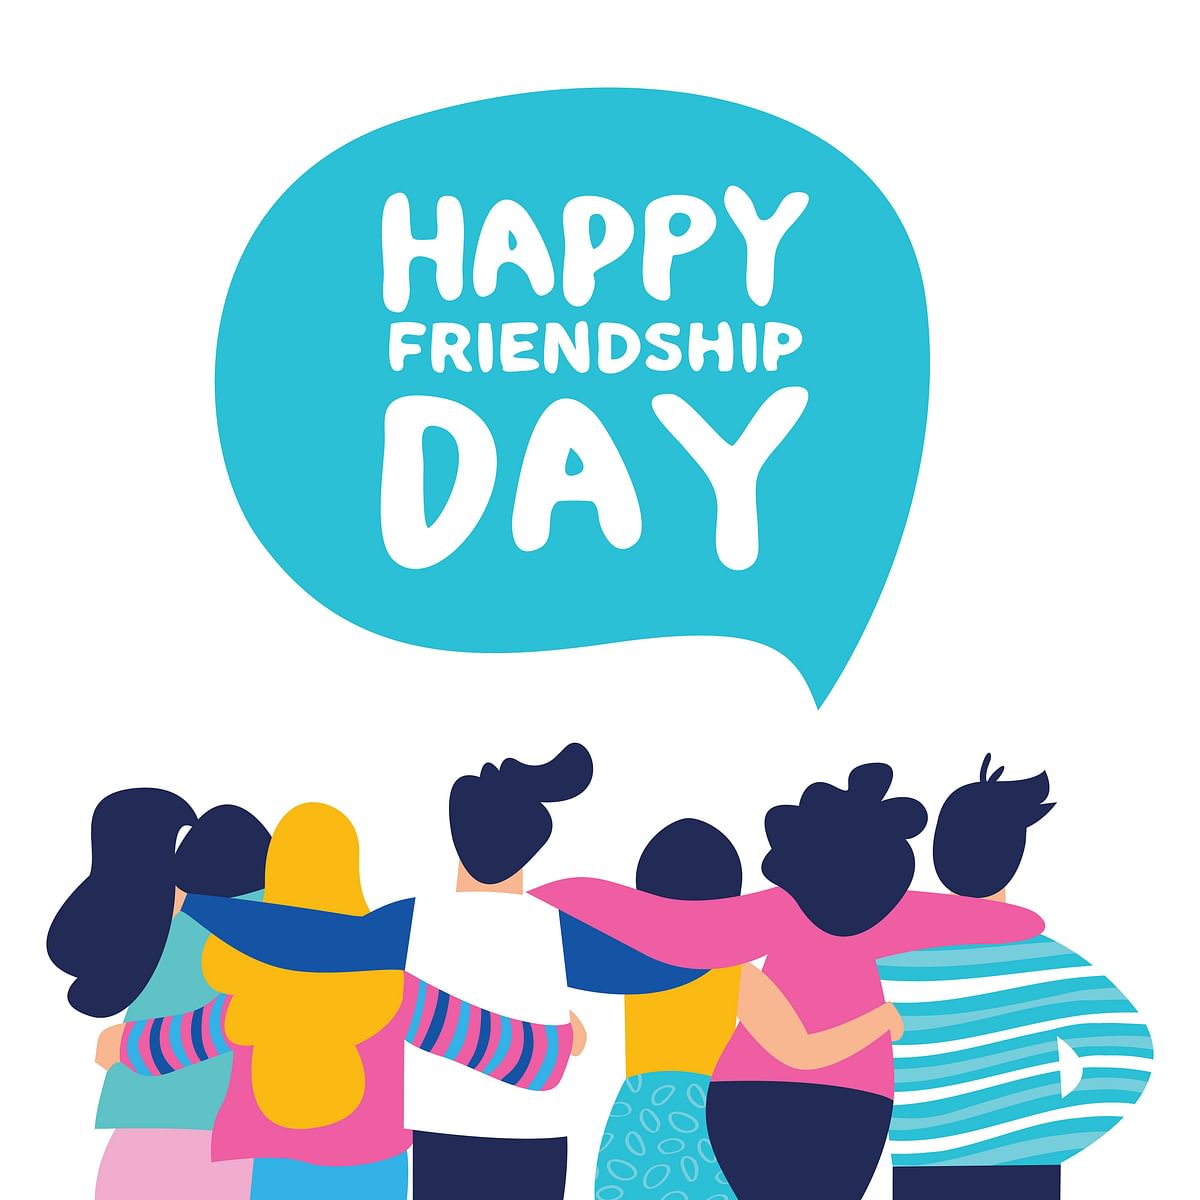 Friendship Day 2021:  हर साल अगस्त माह के पहले रविवार को 'फ्रेंडशिप डे (Friendship Day)' मनाया जाता है.